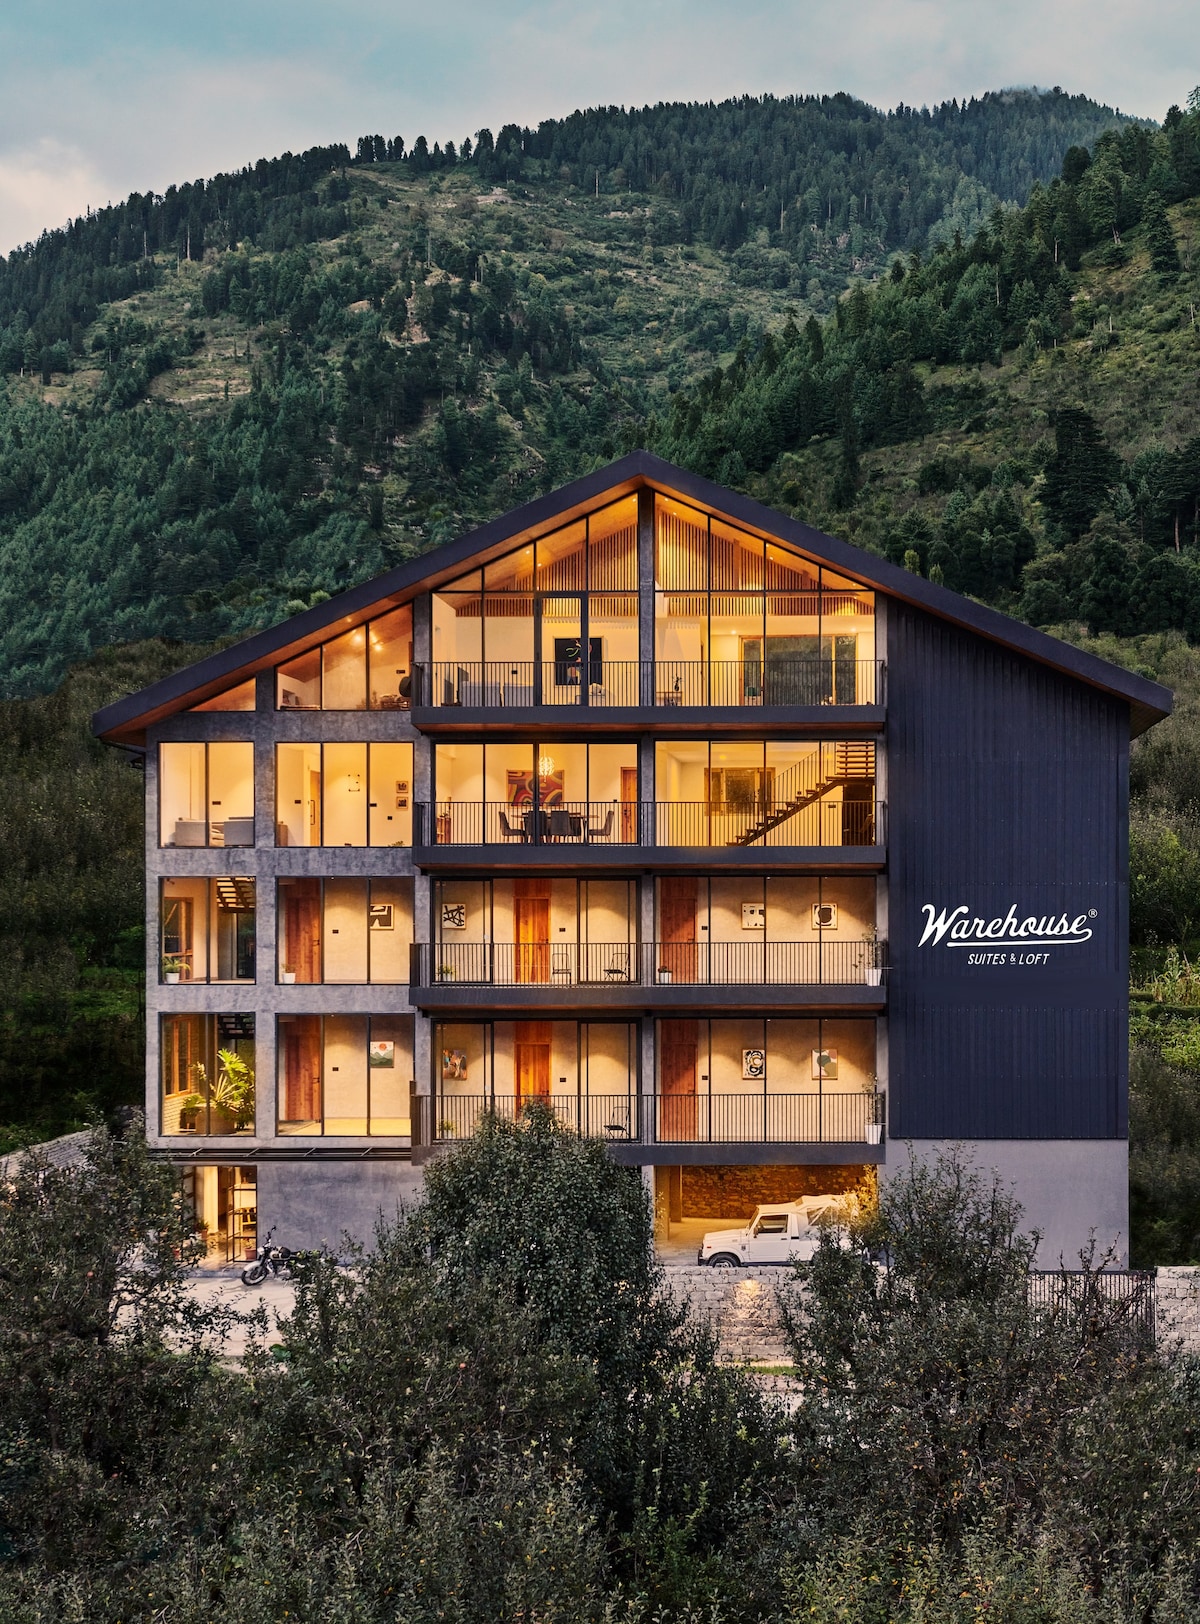 Elegant 7 Bedroom Villa with Stunning Views